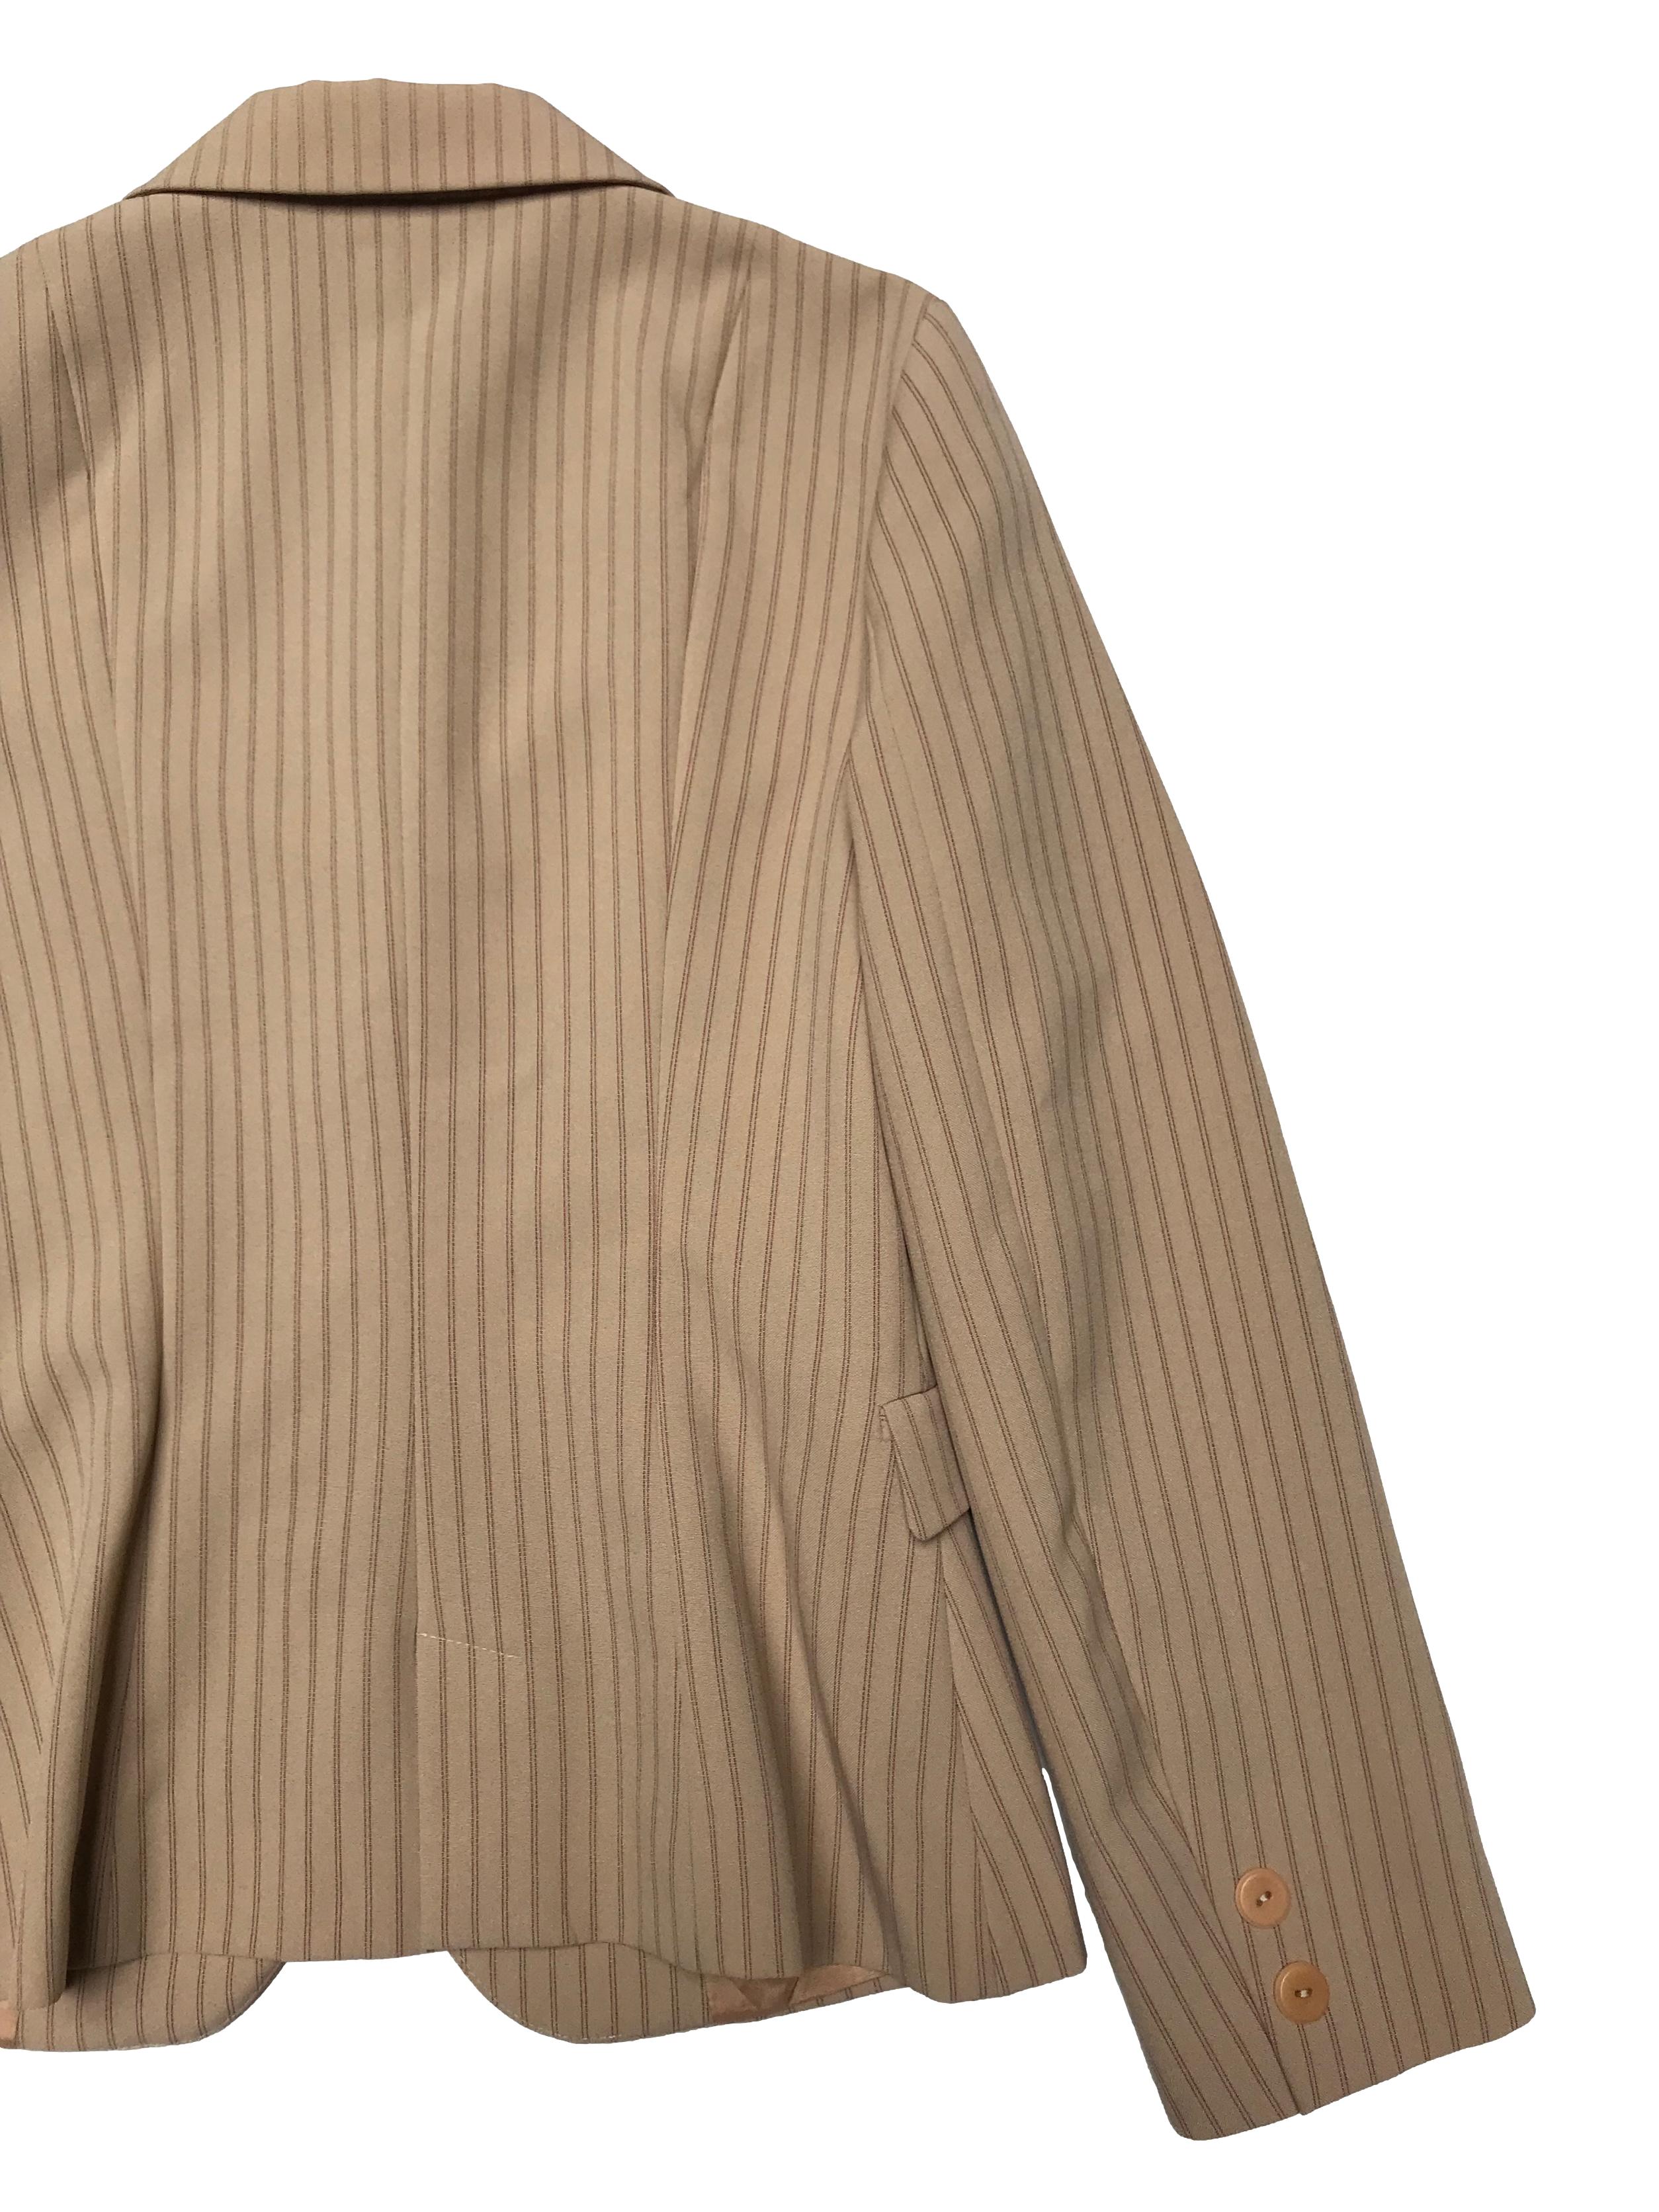 Blazer Zara tipo sastre beige con líneas rojas y guindas, es forrado, tiene solapas y botones al centro y en puños. Busto 92cm Largo 60cm